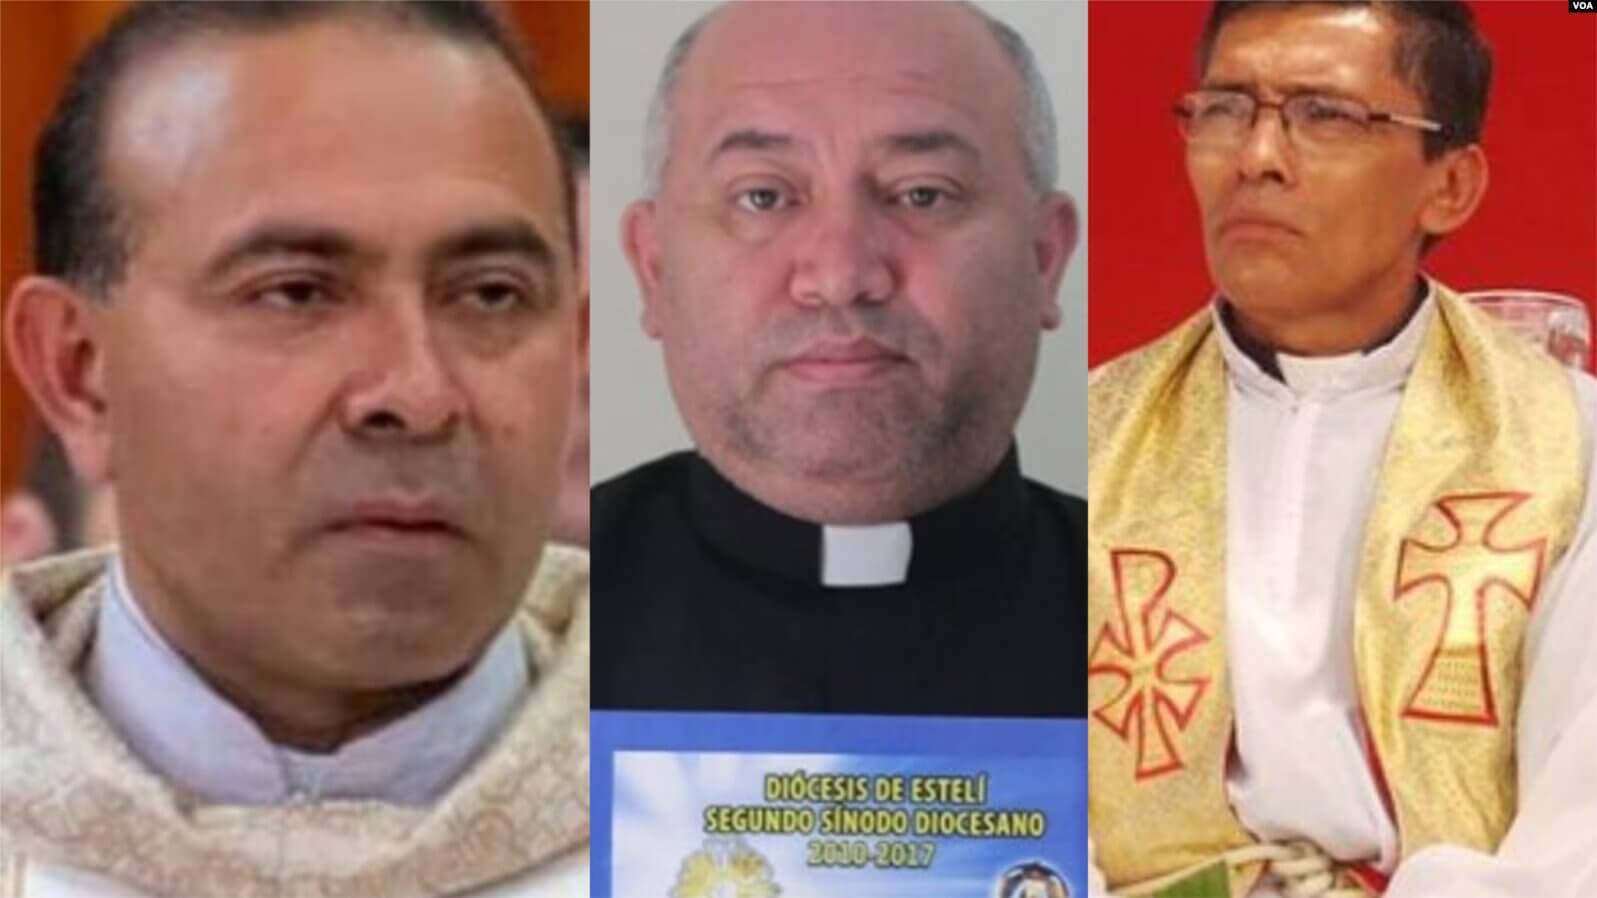 De izquierda a derecha los sacerdotes: Leonardo Guevara Gutiérrez, Pastor Eugenio Rodríguez Benavides y Jaime Montesino. El último fue detenido mientras los otros dos están siendo investigados. Cortesía.